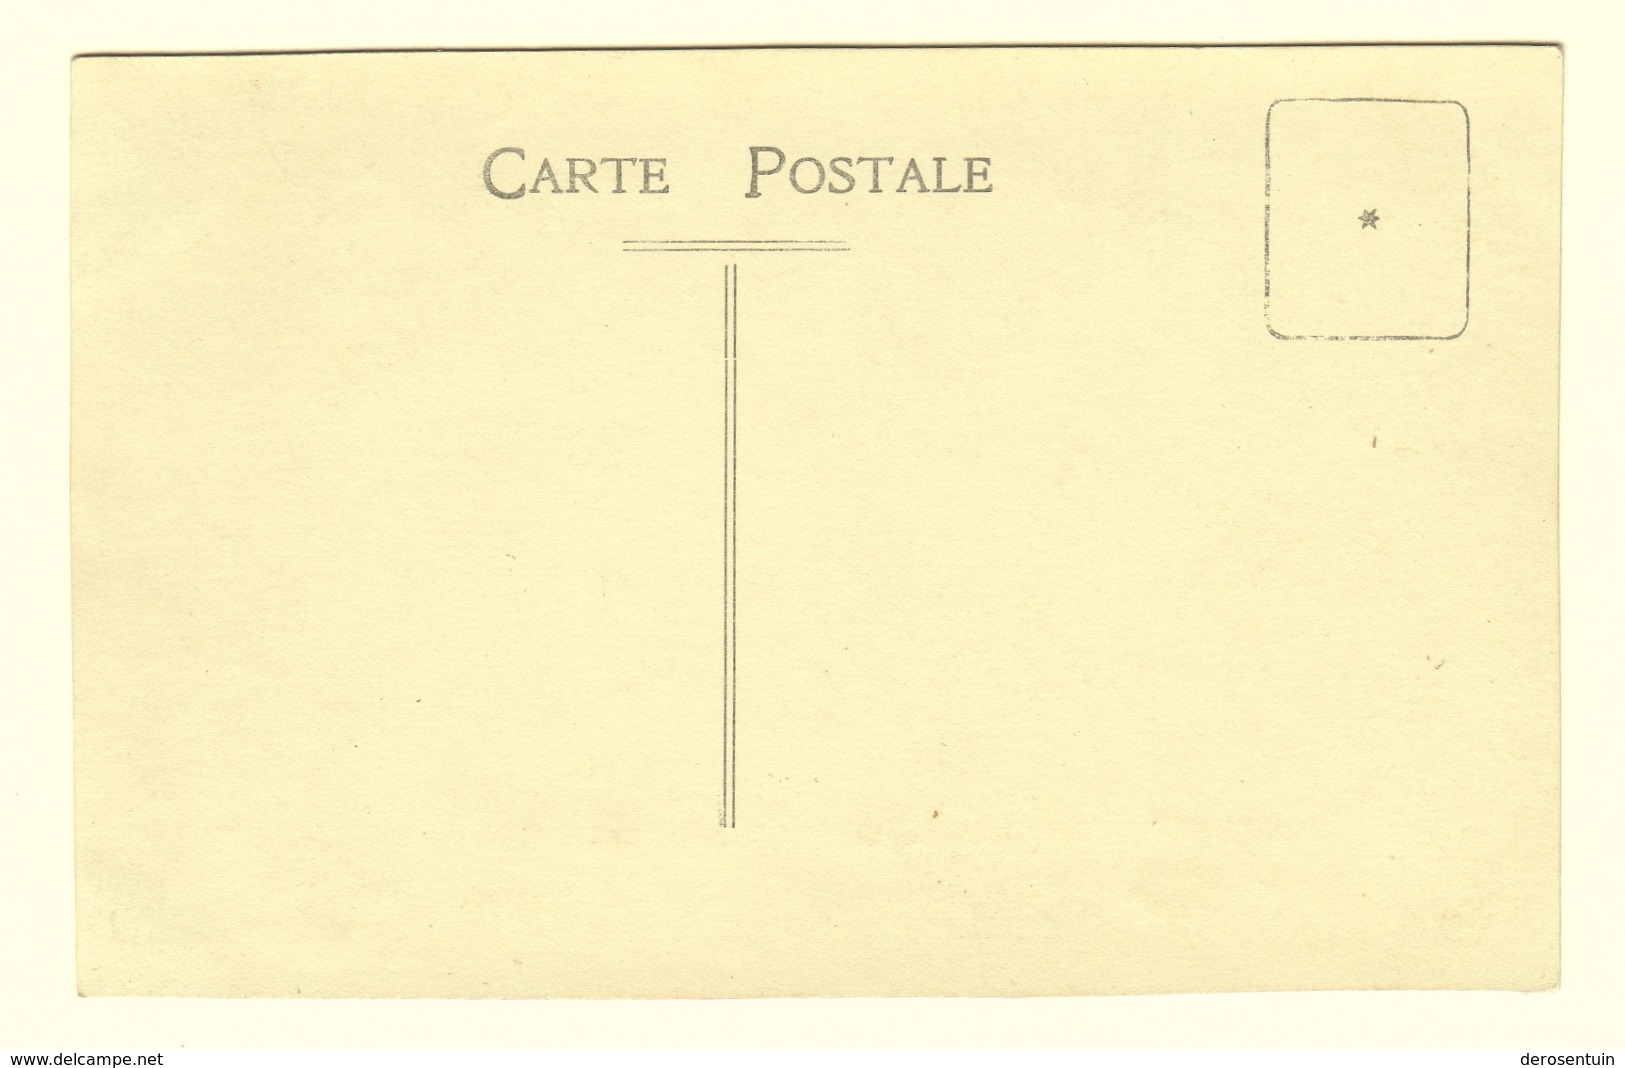 #21591	[Postkaarten] Lot van 30 (hoofdzakelijk) fotokaarten etc. (militairen, baby, personen, naakt, antiek ...)